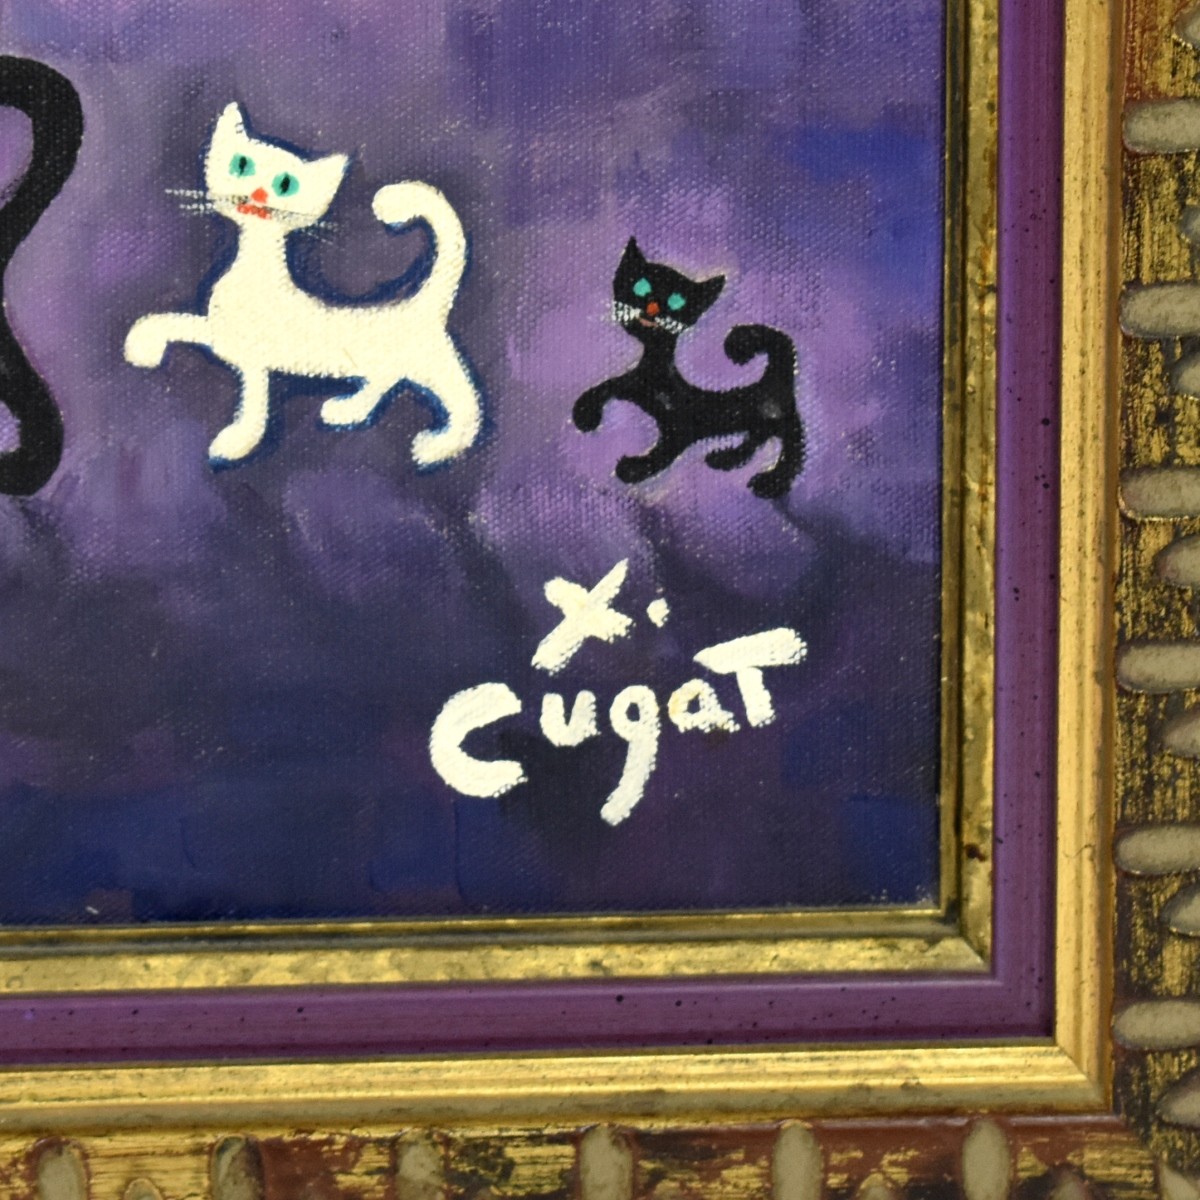 Xavier Cugat (1900 - 1990) O/C Chico con Gatos